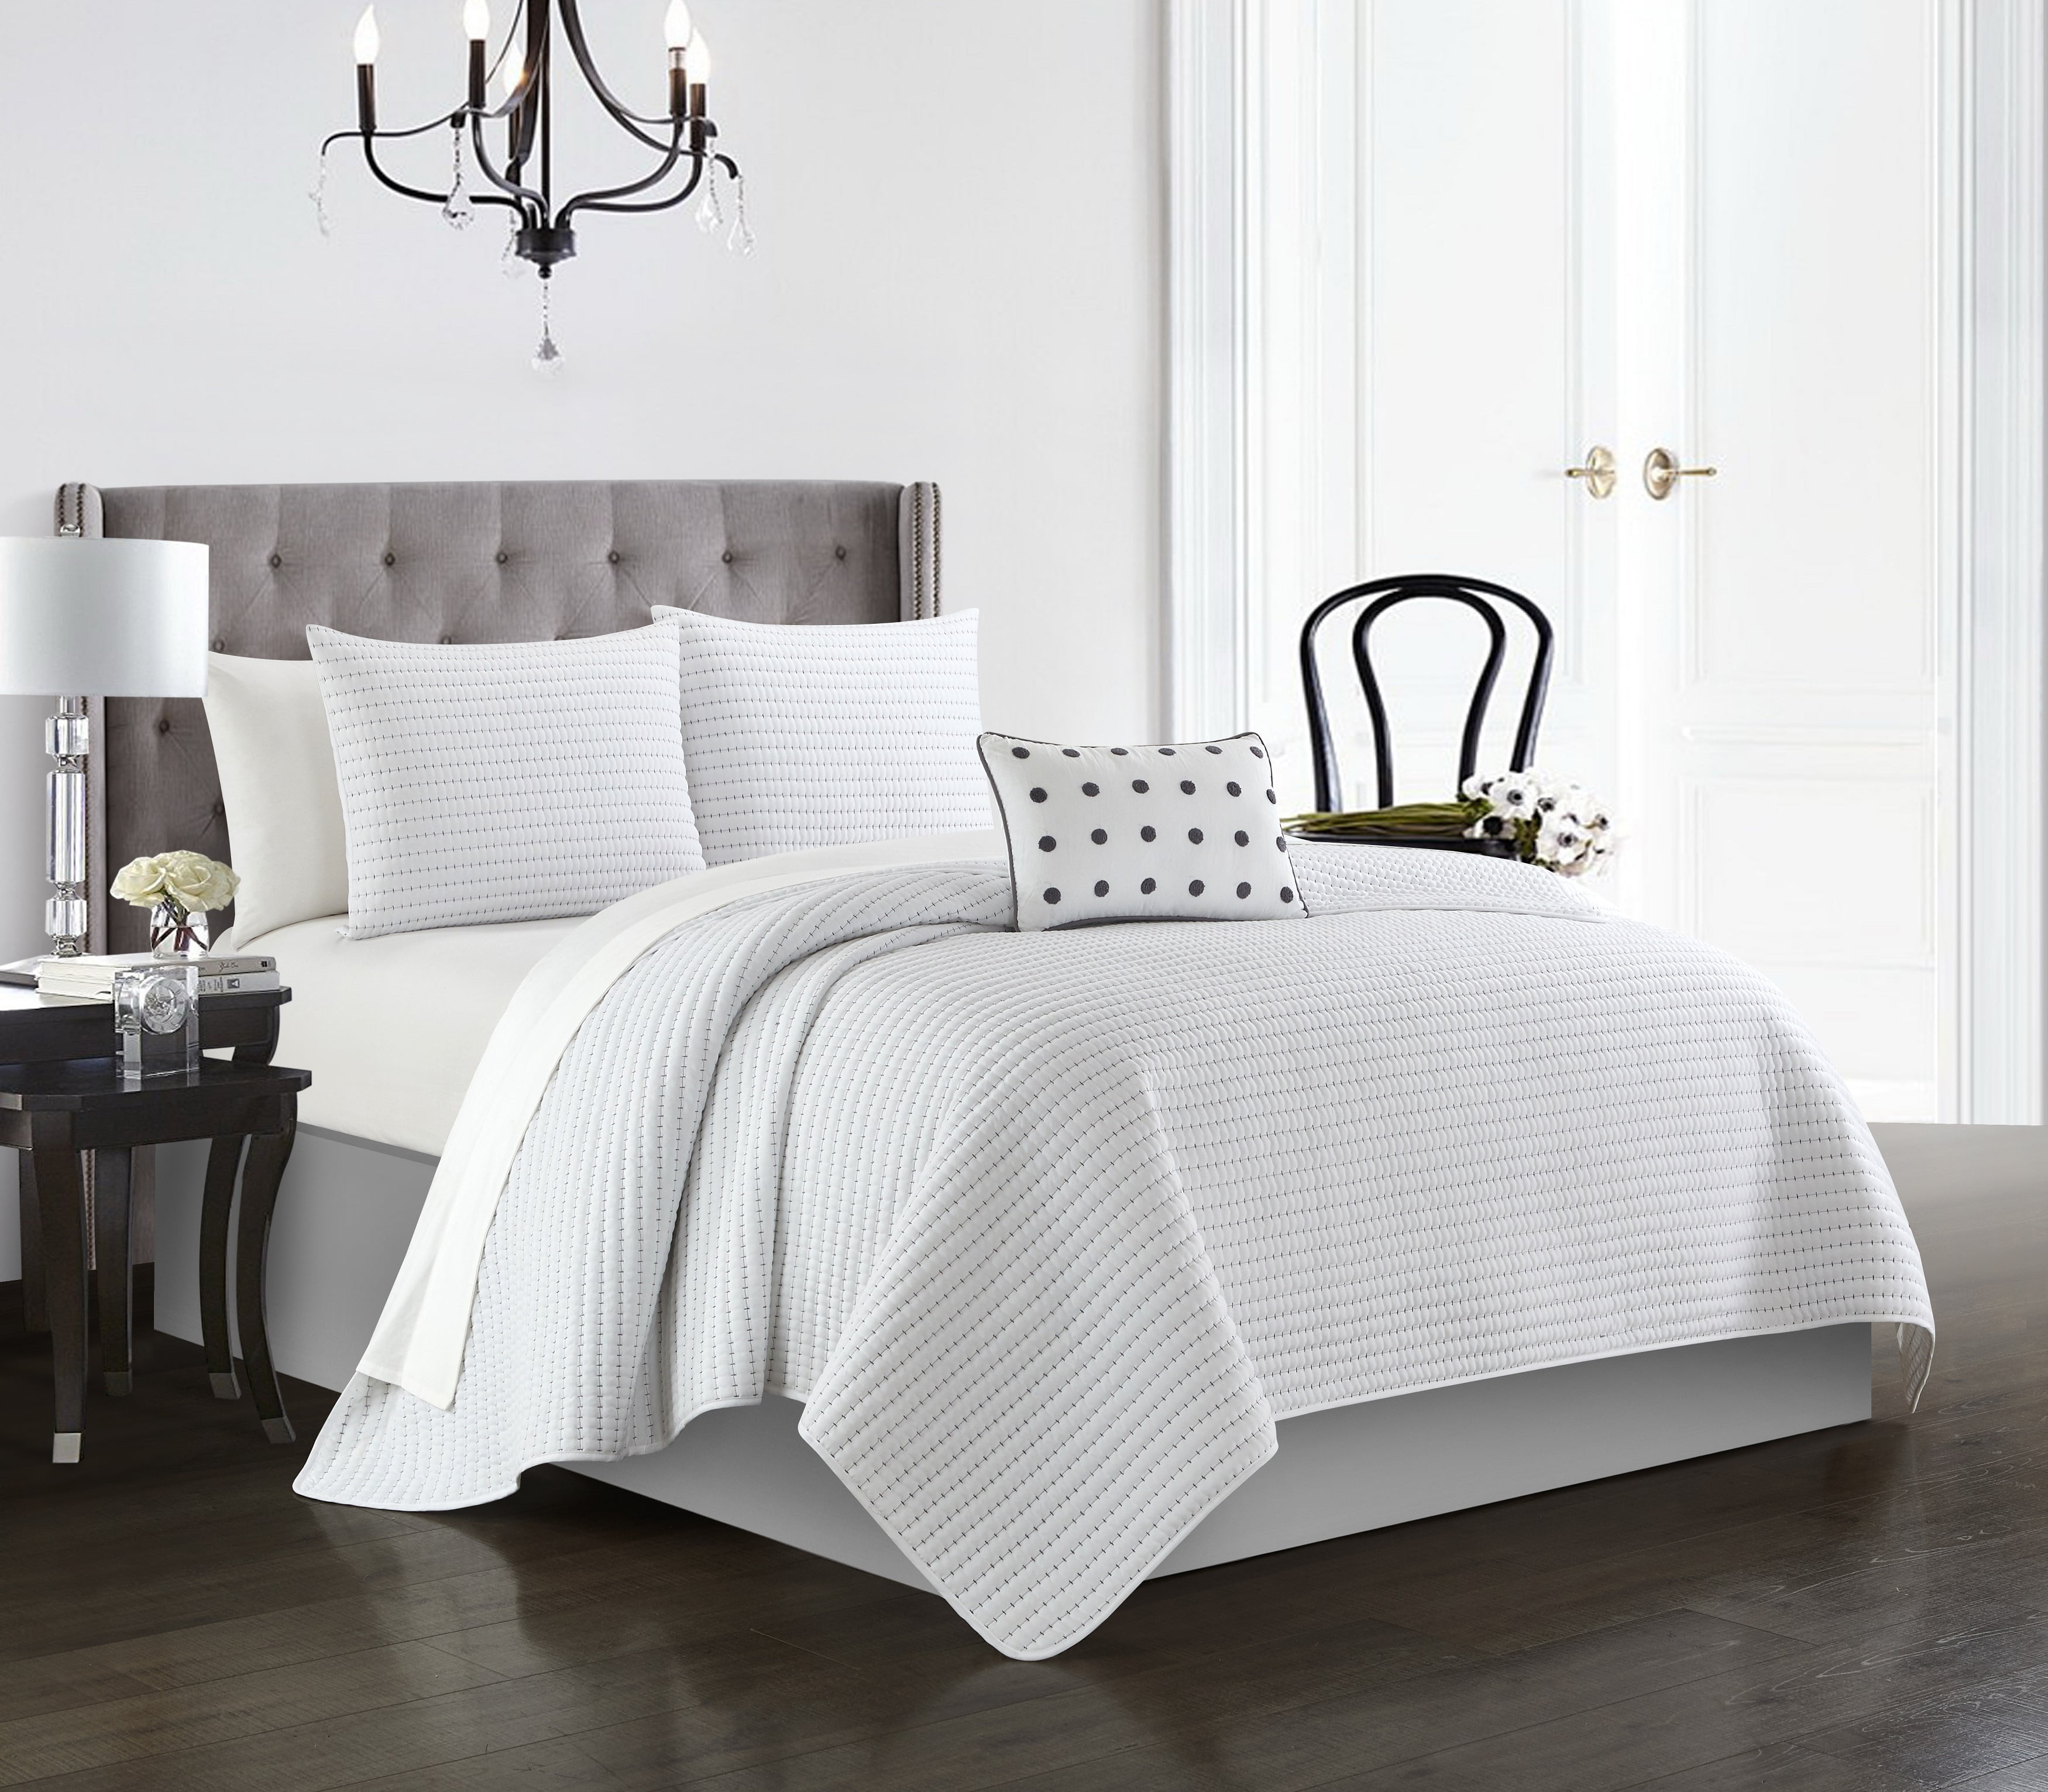 Details about   Elegant Black Grey Striped Border Comforter & Sheets King or Queen 10 pcs Set 